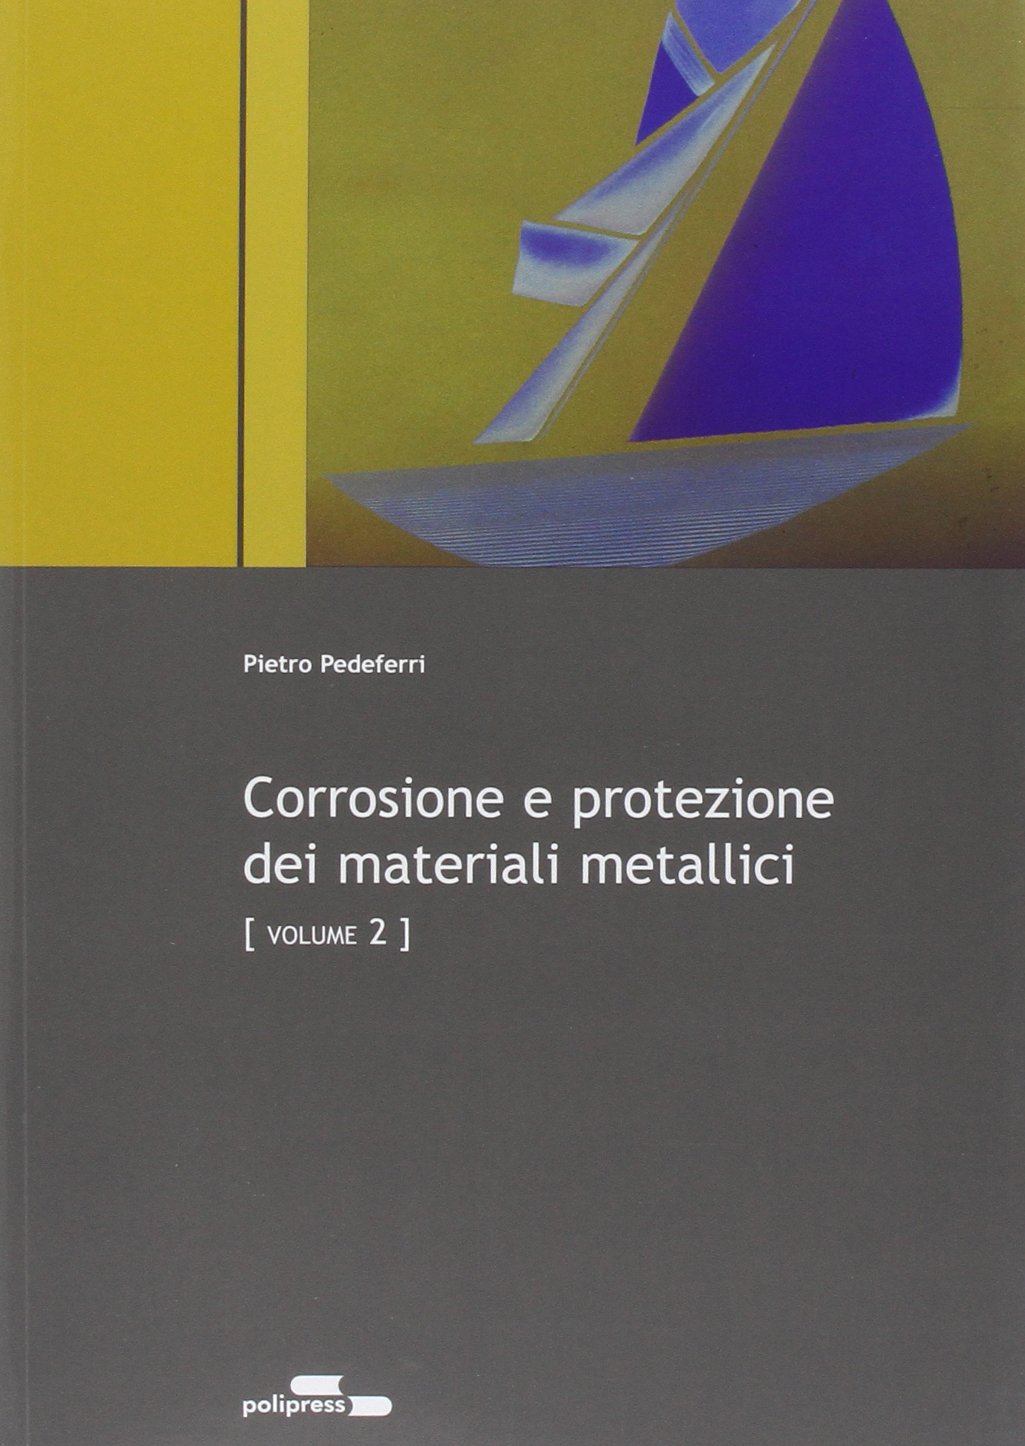 Download Corrosione E Protezione Dei Materiali Metallici Pedeferri Pdf free software